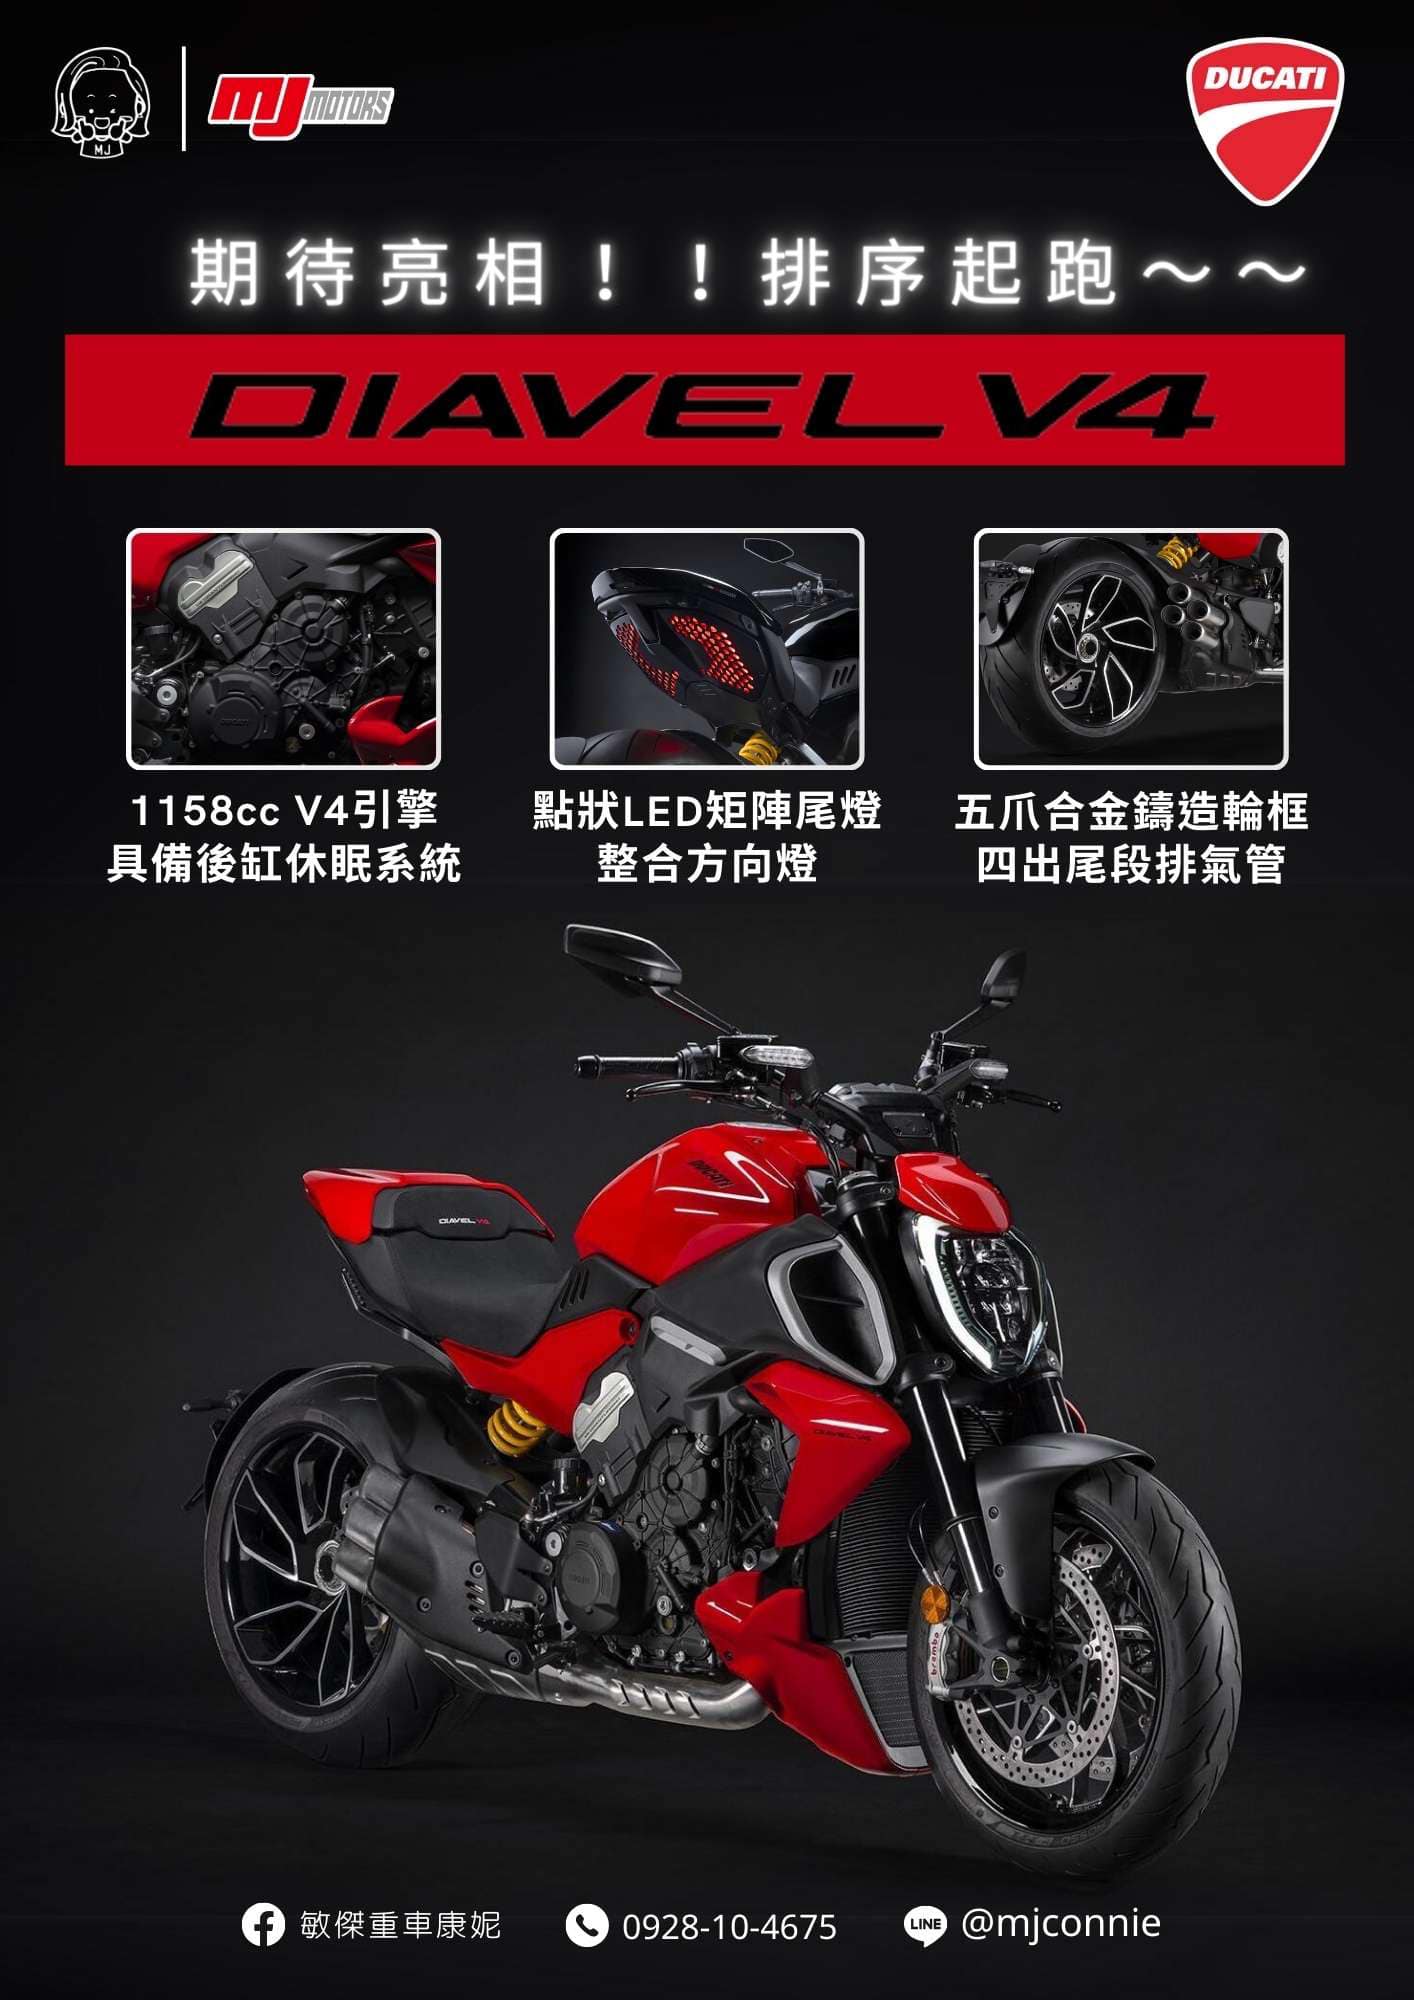 【敏傑車業資深銷售專員 康妮 Connie】DUCATI DIAVEL V4 - 「Webike-摩托車市」 『敏傑康妮』你們在期待的 Ducati Diavel V4 可開始排序嘍~